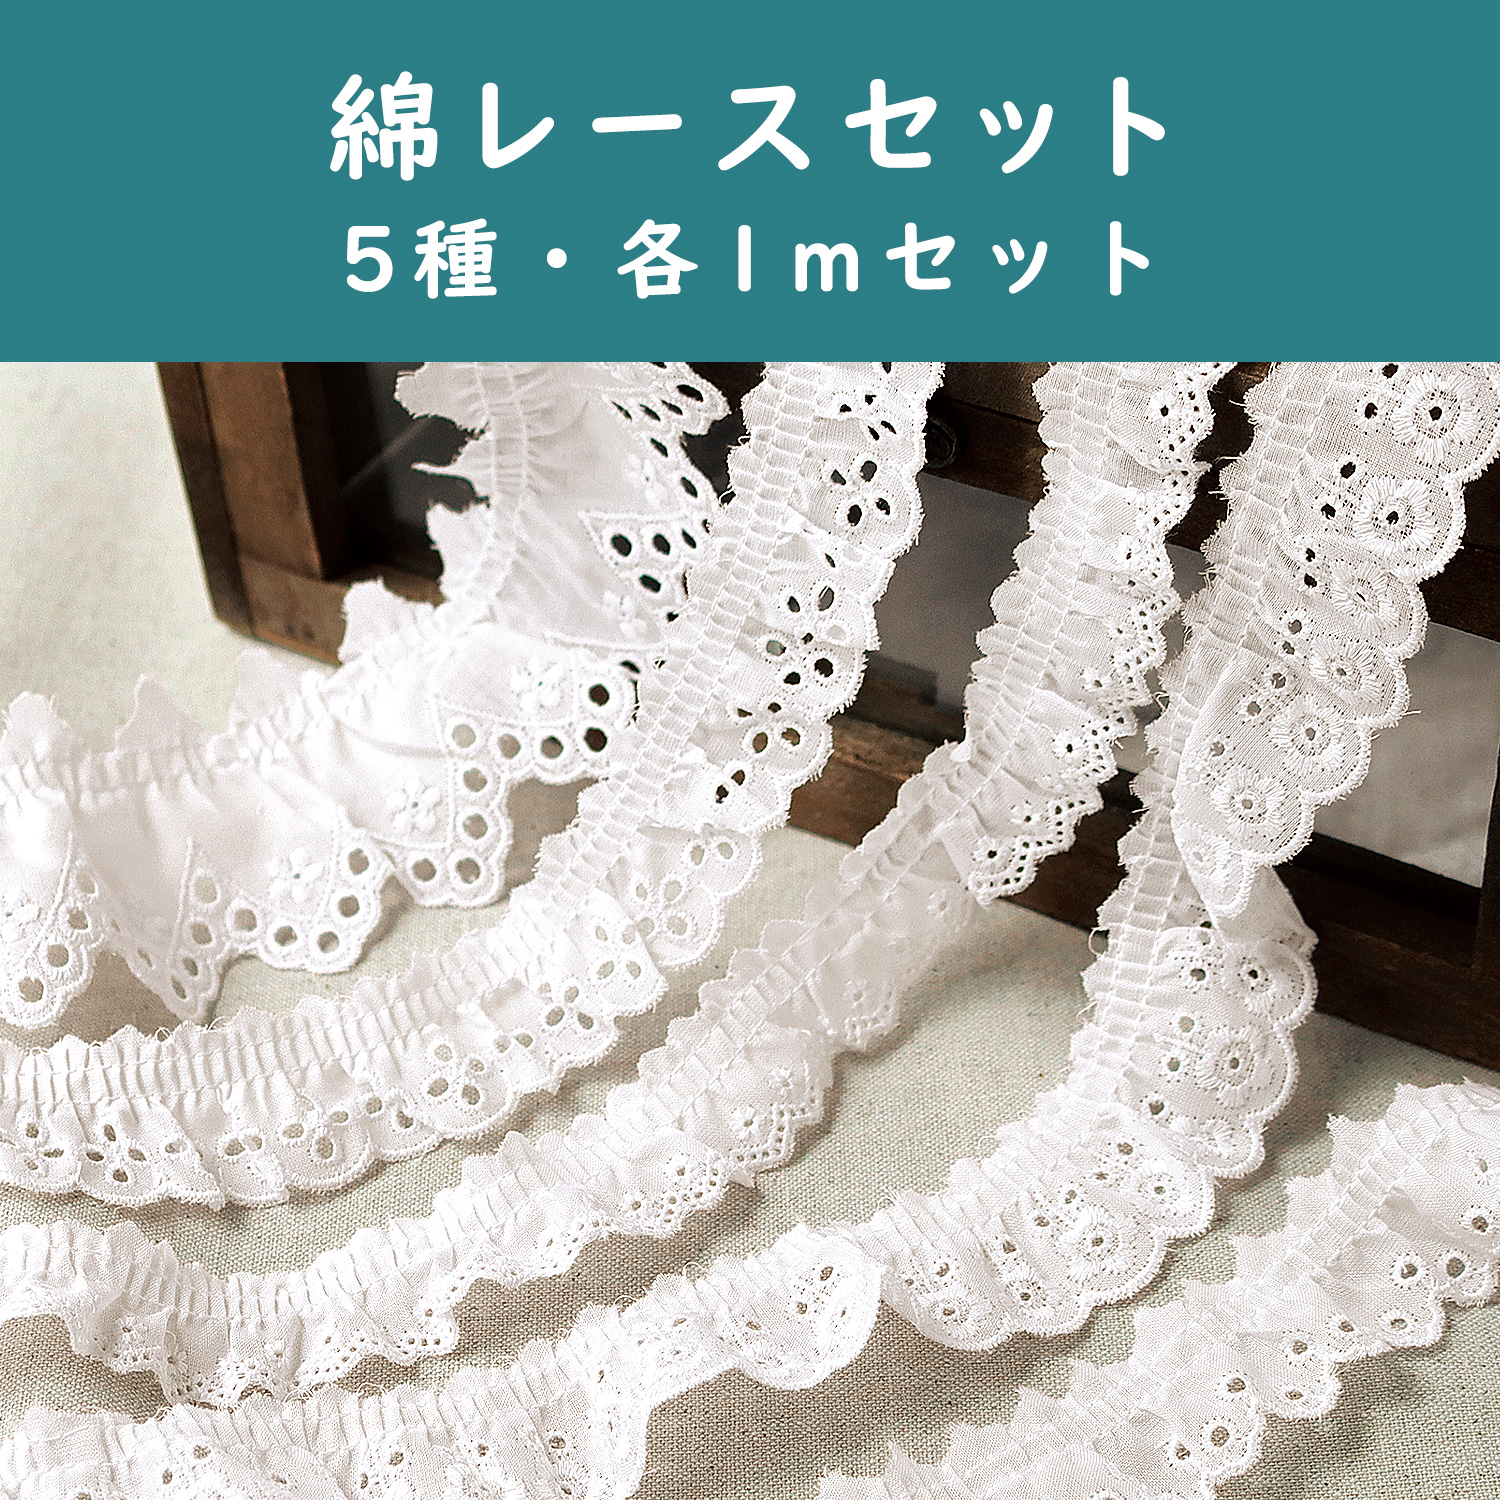 LACE-CFSET Cotton lace set 5 types/1m each set (set)